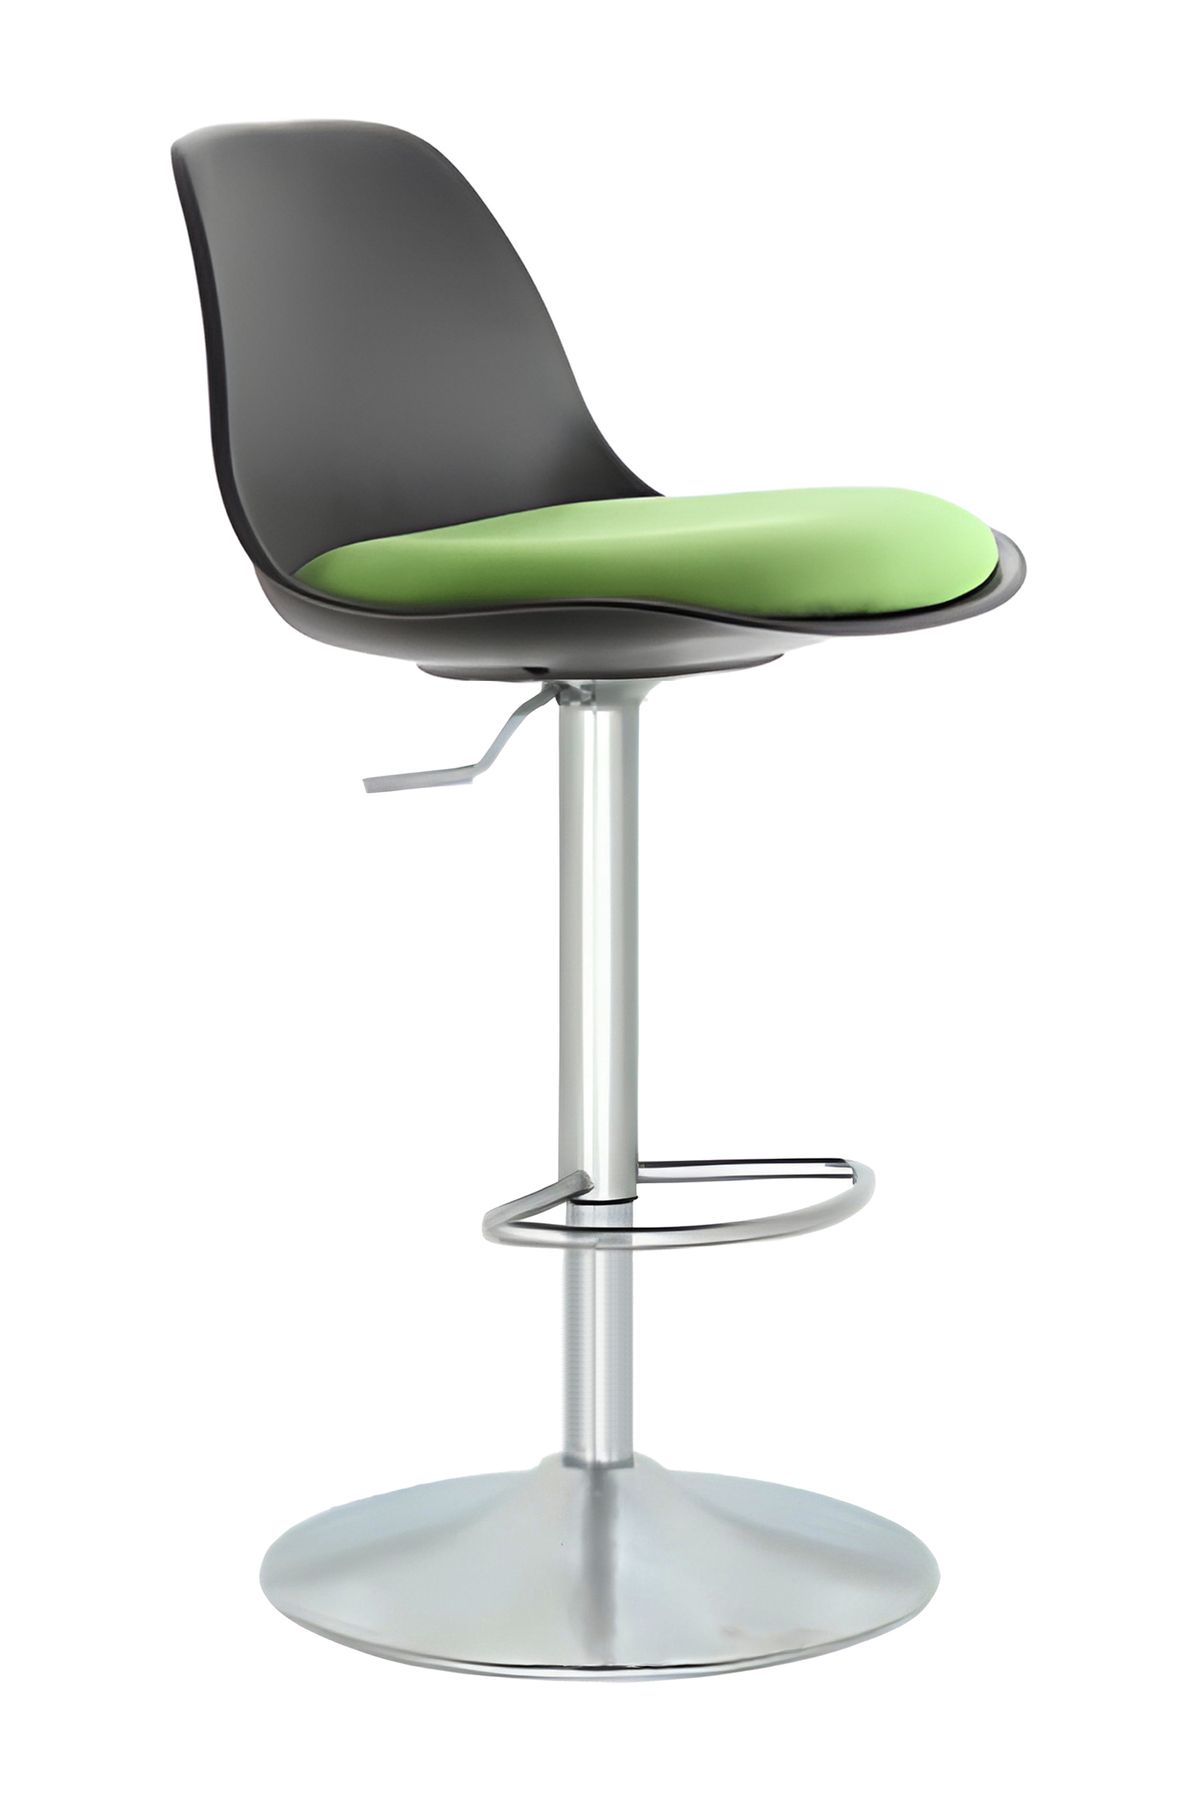 Bürocci Nadya Bar Sandalyesi - Yeşil Deri - Metal Ayaklı Bar Taburesi - 9537s0110